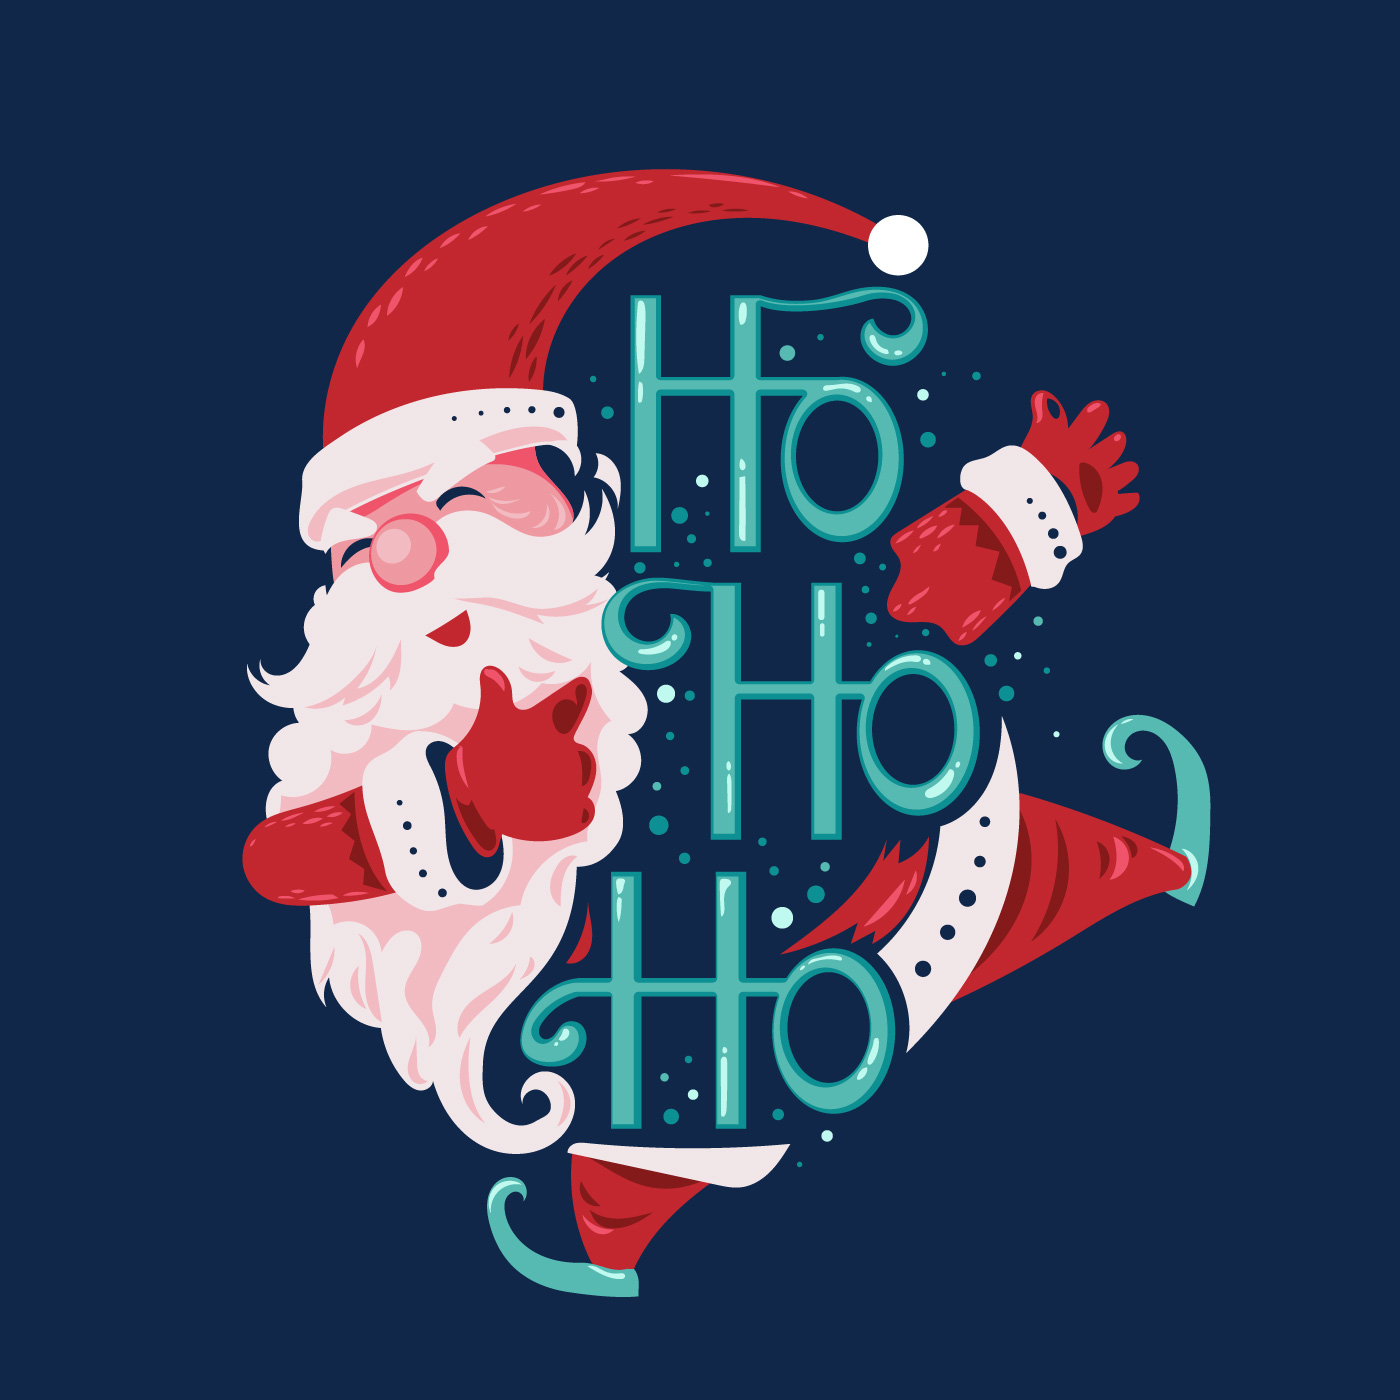 Ho Ho Ho Santa Claus Download Free Vectors Clipart Graphics Vector Art